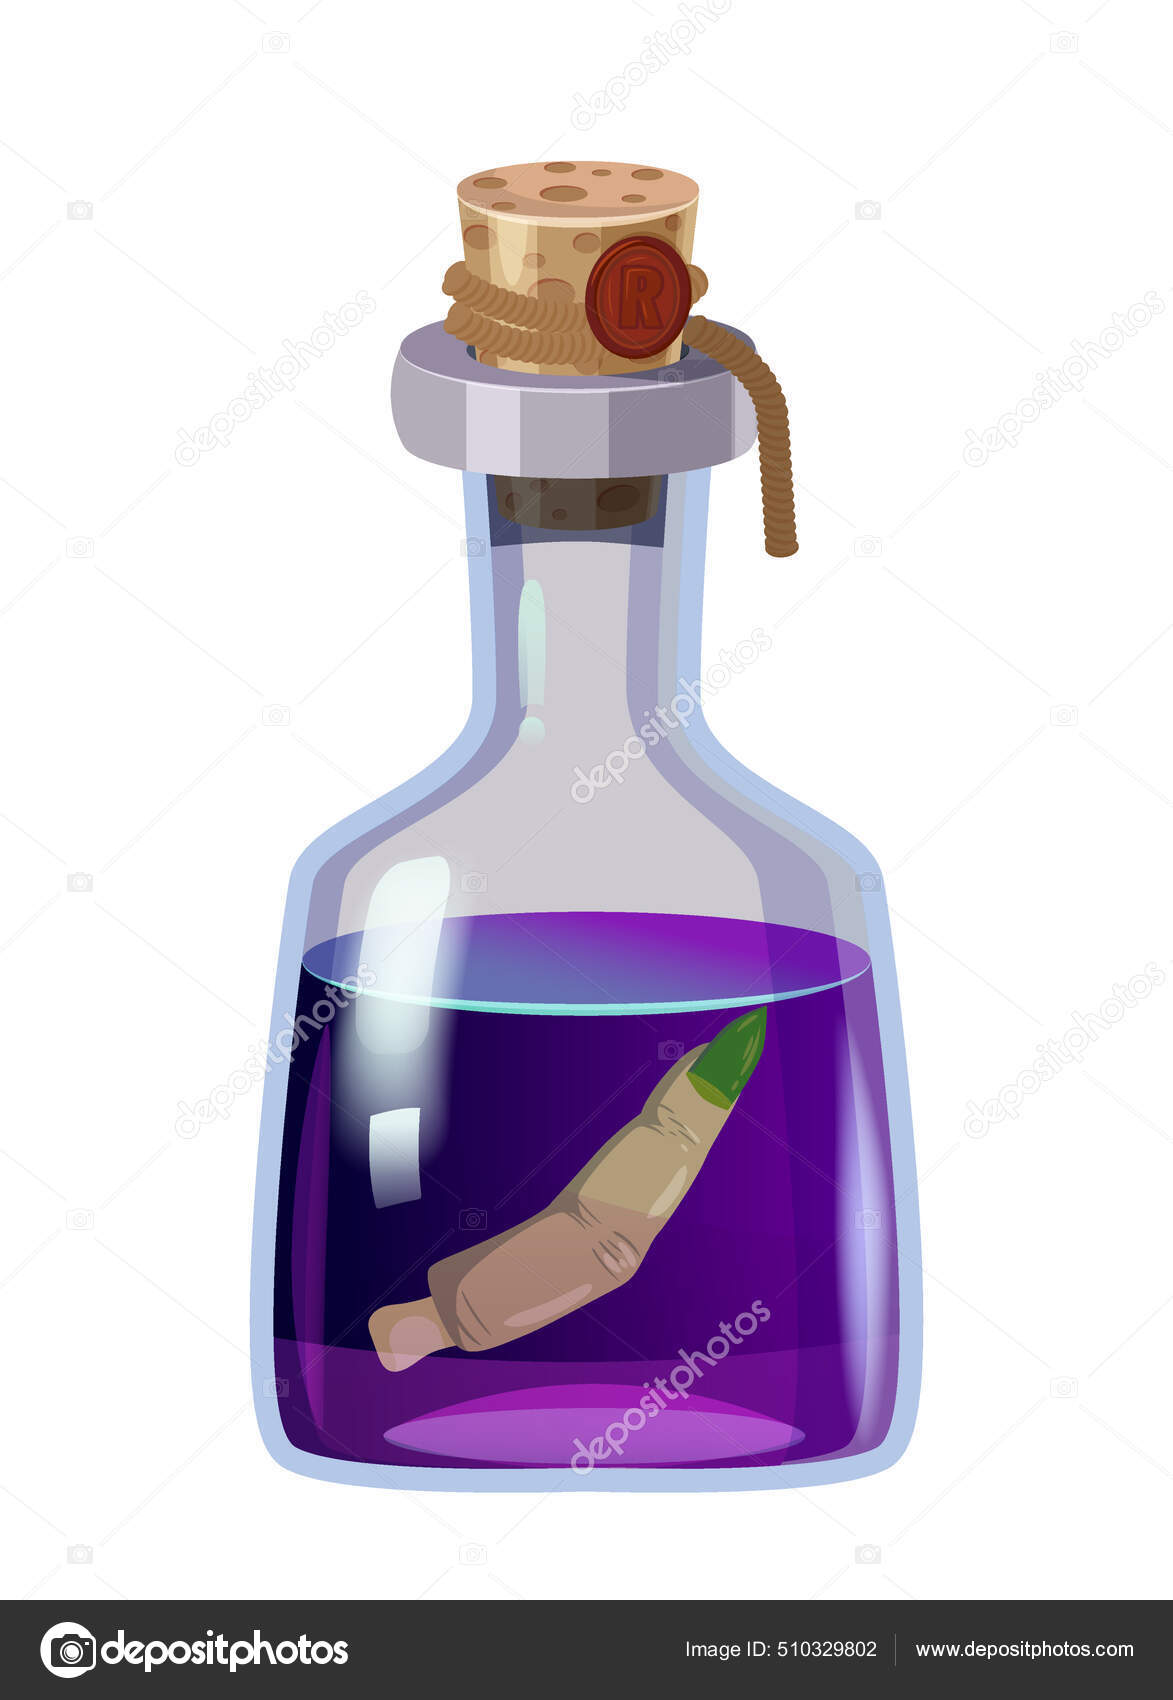 https://st2.depositphotos.com/5857850/51032/v/1600/depositphotos_510329802-stock-illustration-bottle-magic-potion-with-finger.jpg